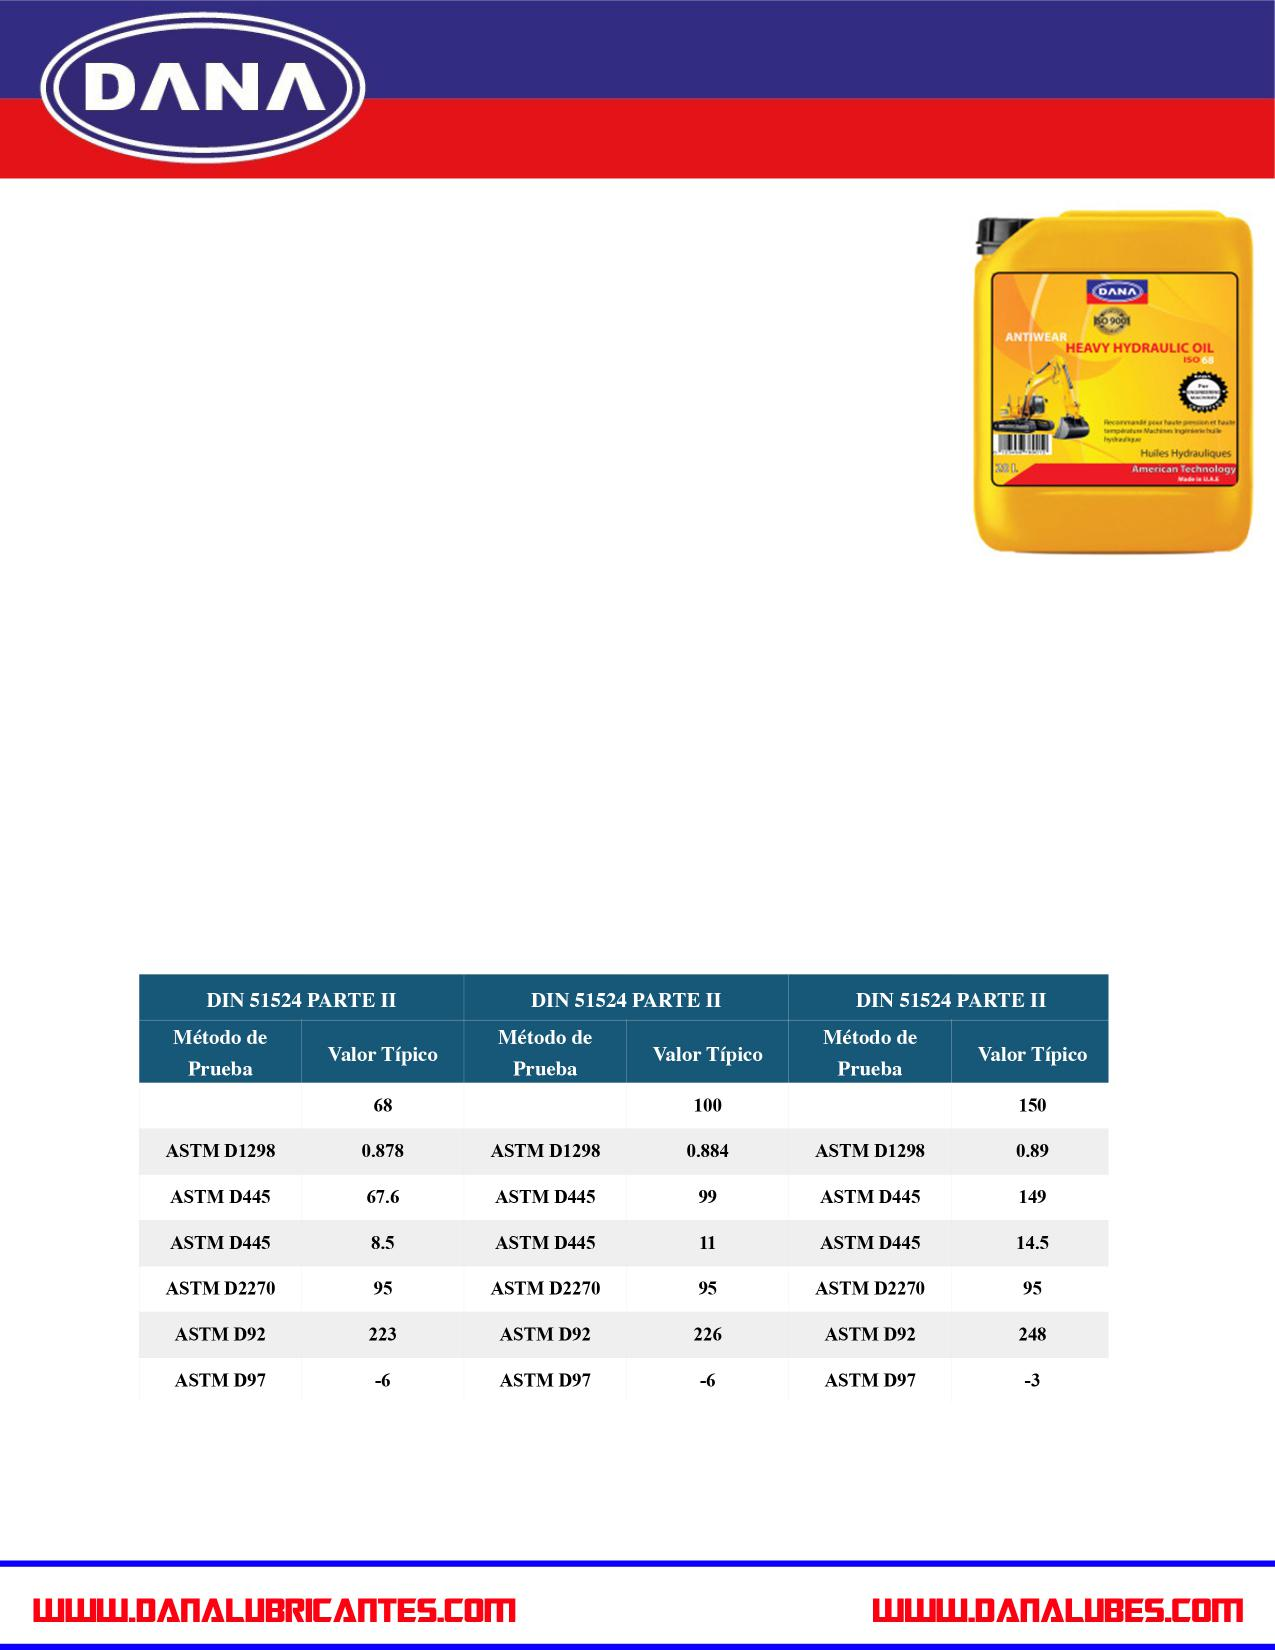 ACEITE HIDRAULICO DANA Aceite Hidráulico DANA se formula a partir de aceite mineral con una gama de grados de viscosidad para satisfacer las exigencias de los fabricantes de equipos hidráulicos en